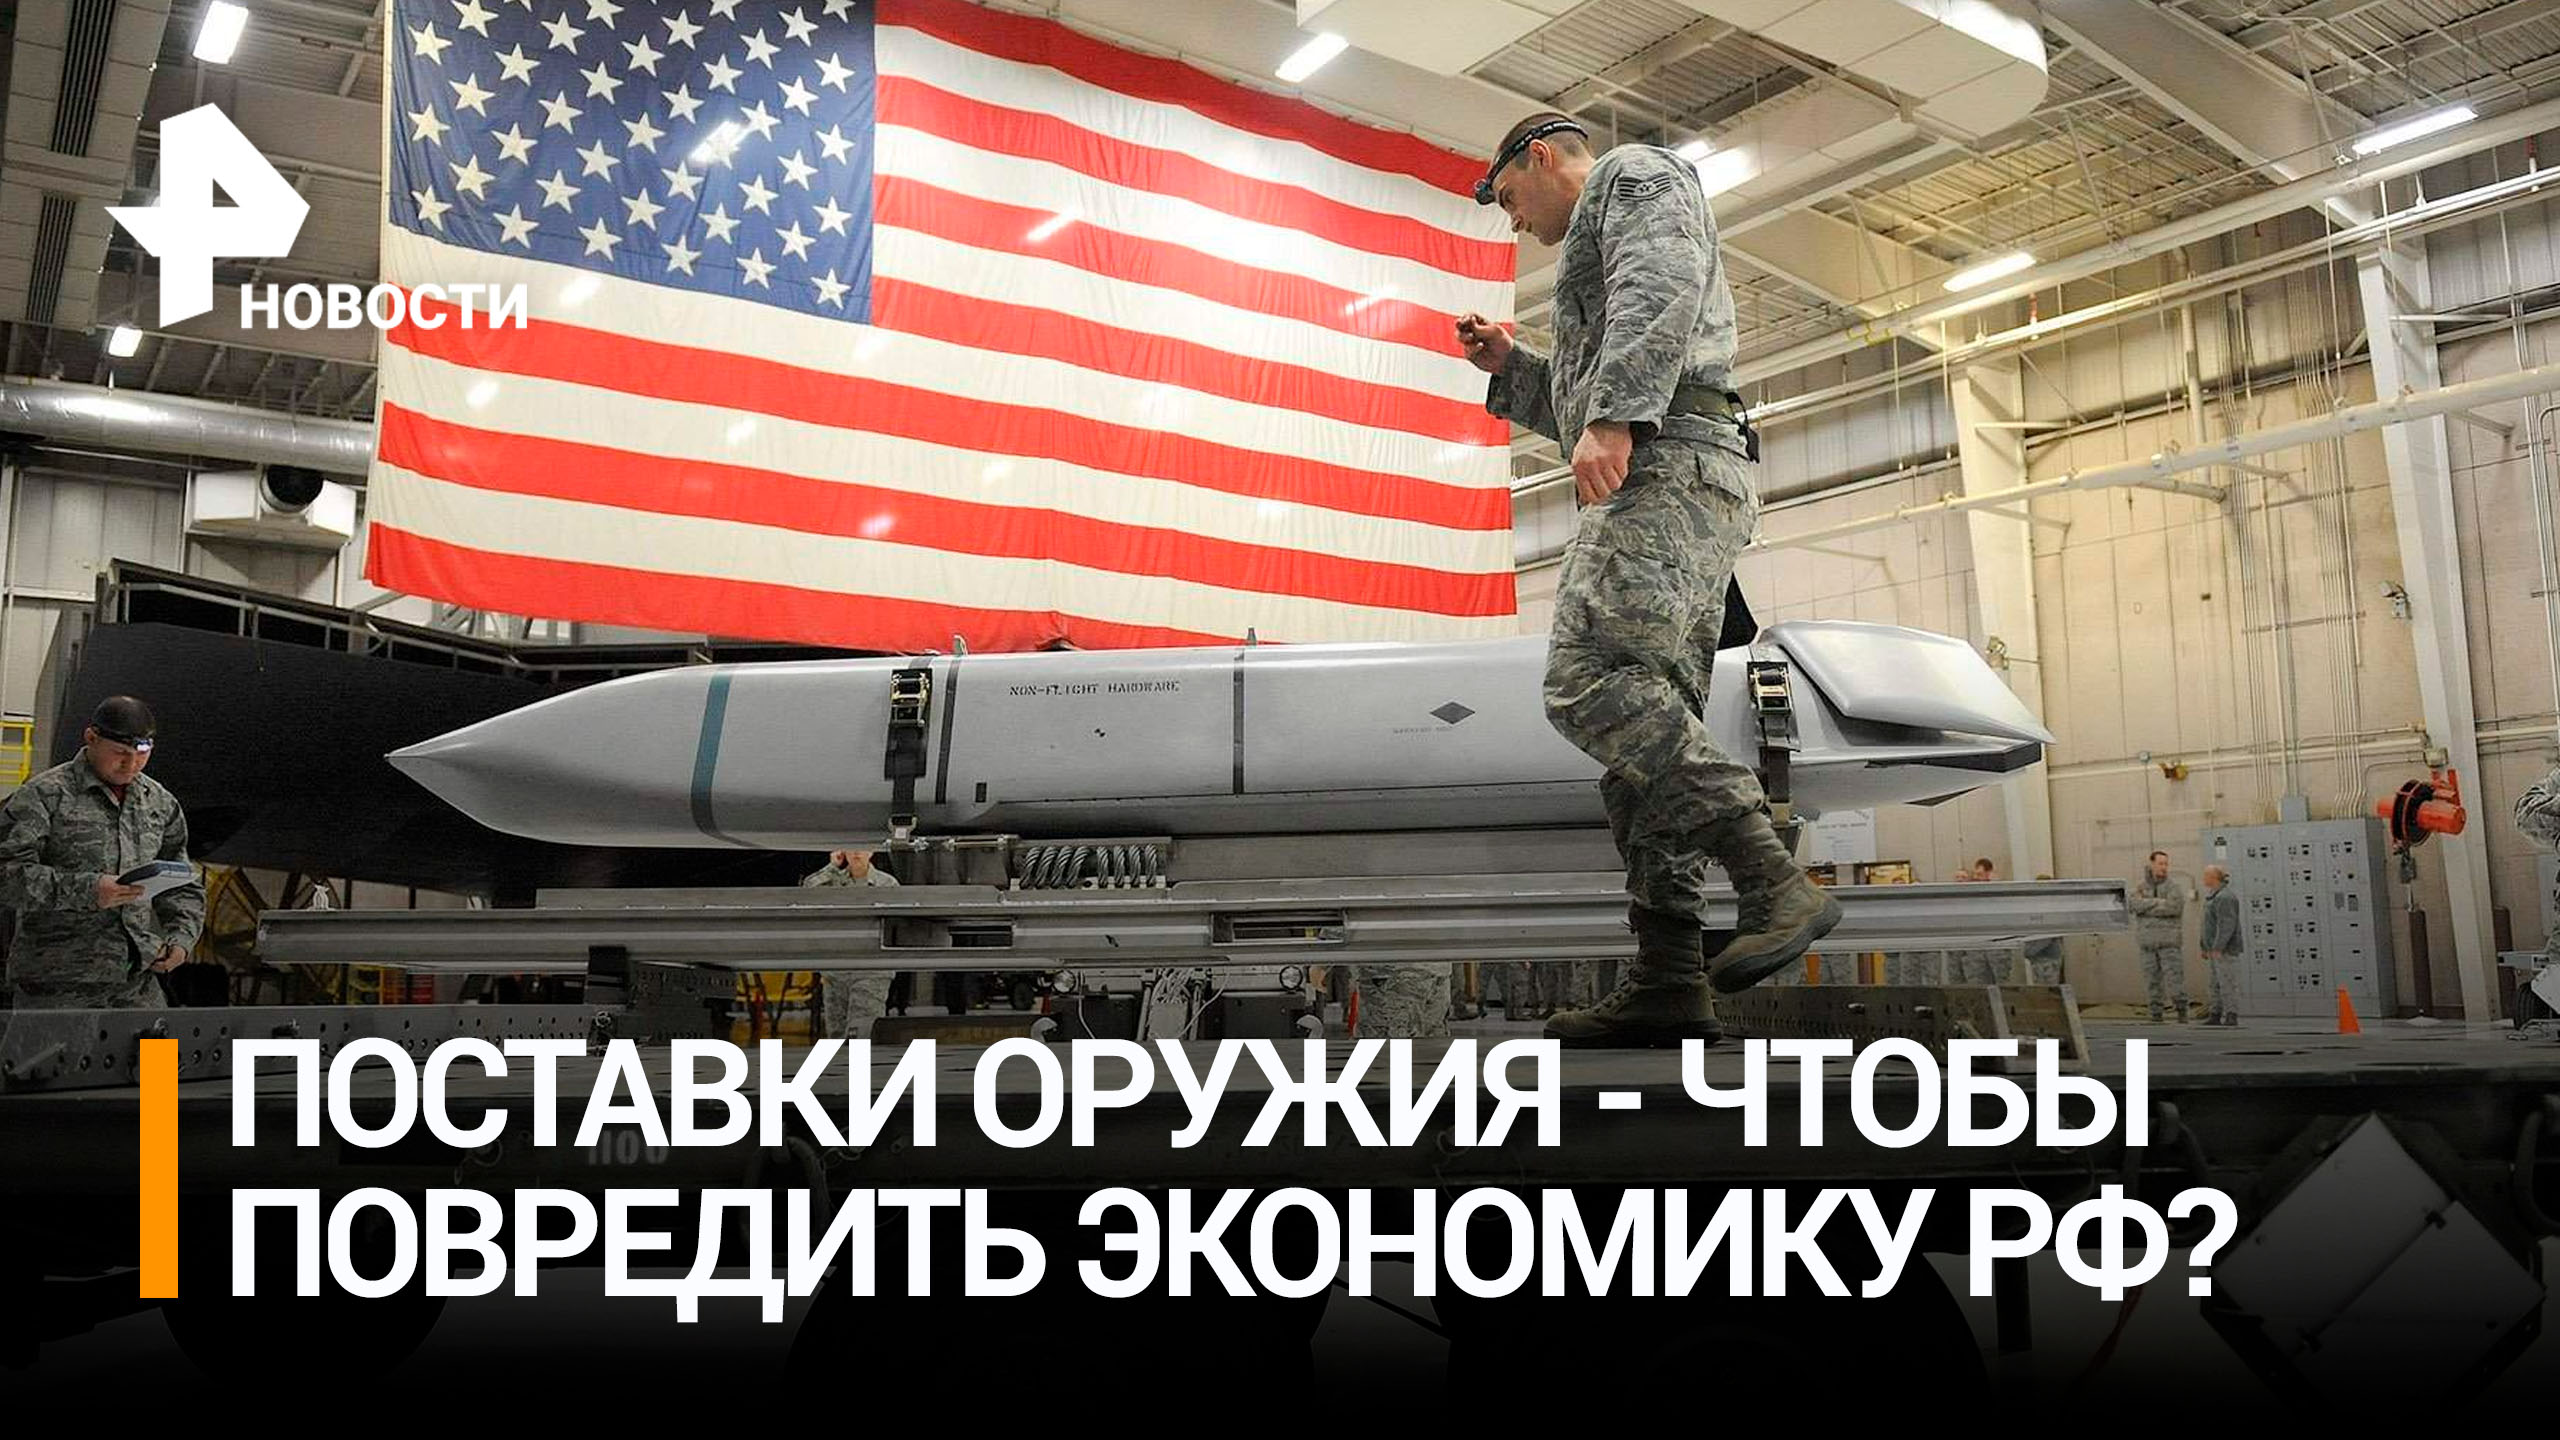 США обвинили в вооружении украинцев назло российской экономике / РЕН Новости